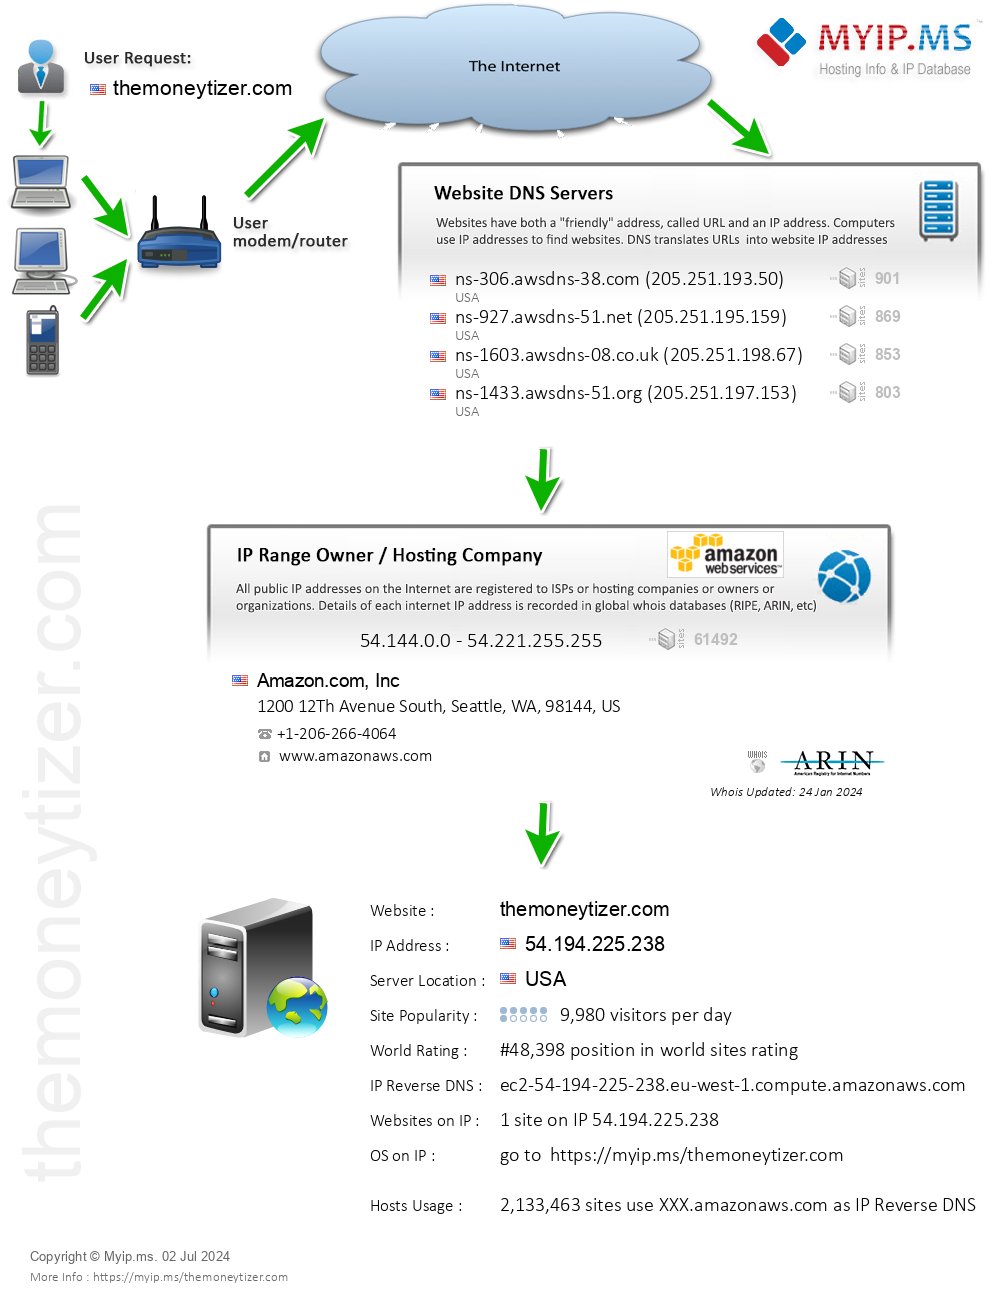 Themoneytizer.com - Website Hosting Visual IP Diagram